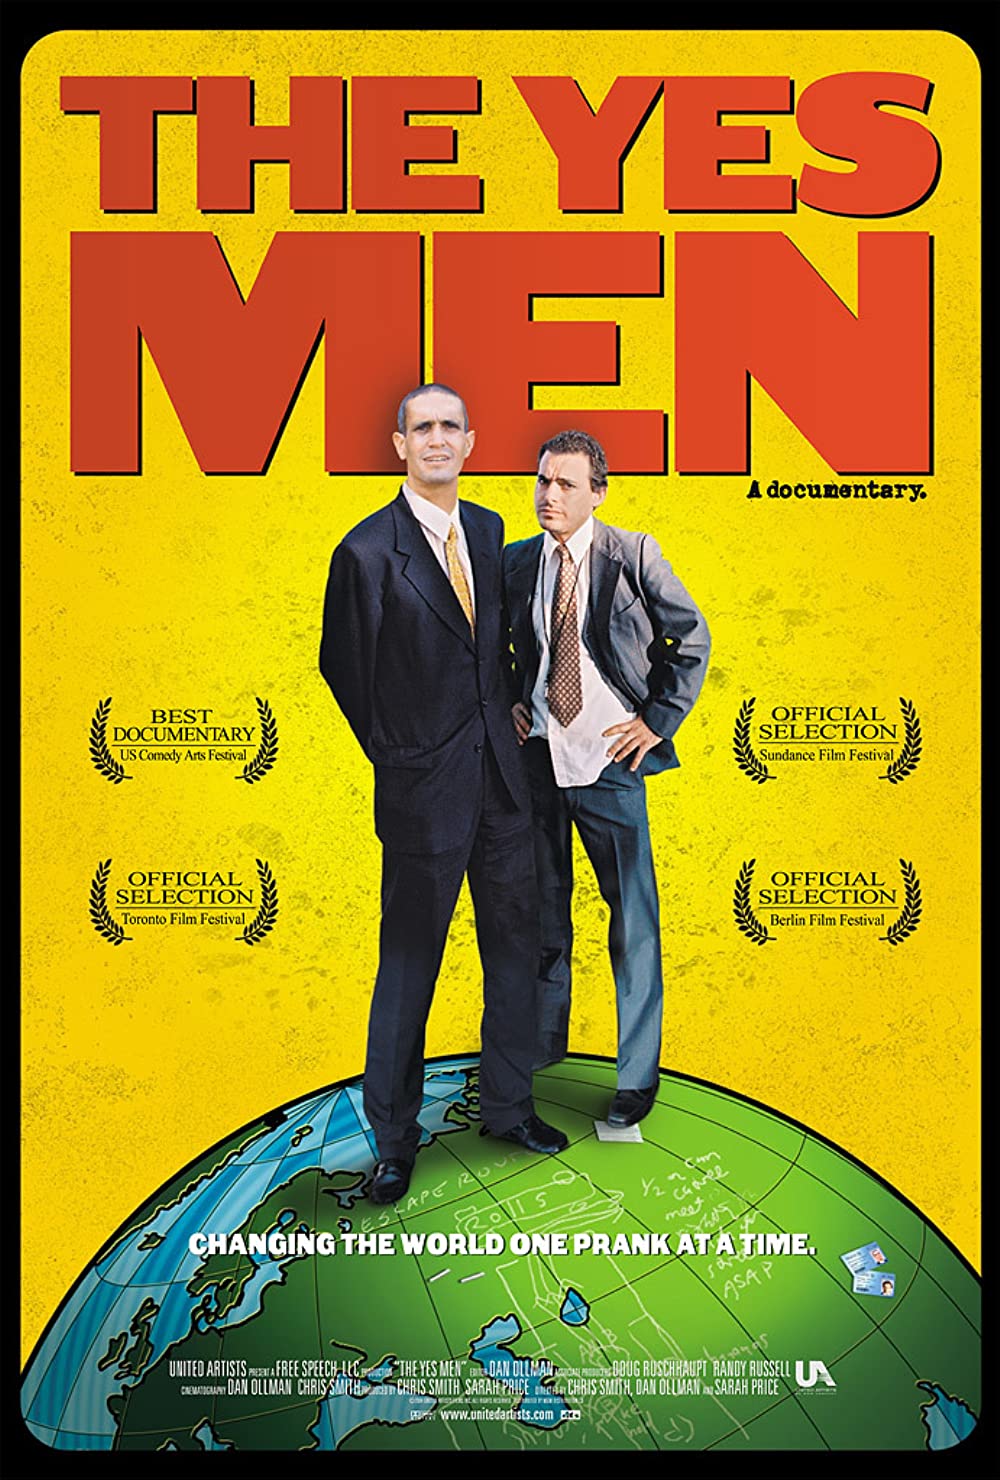 Filmbeschreibung zu The Yes Men